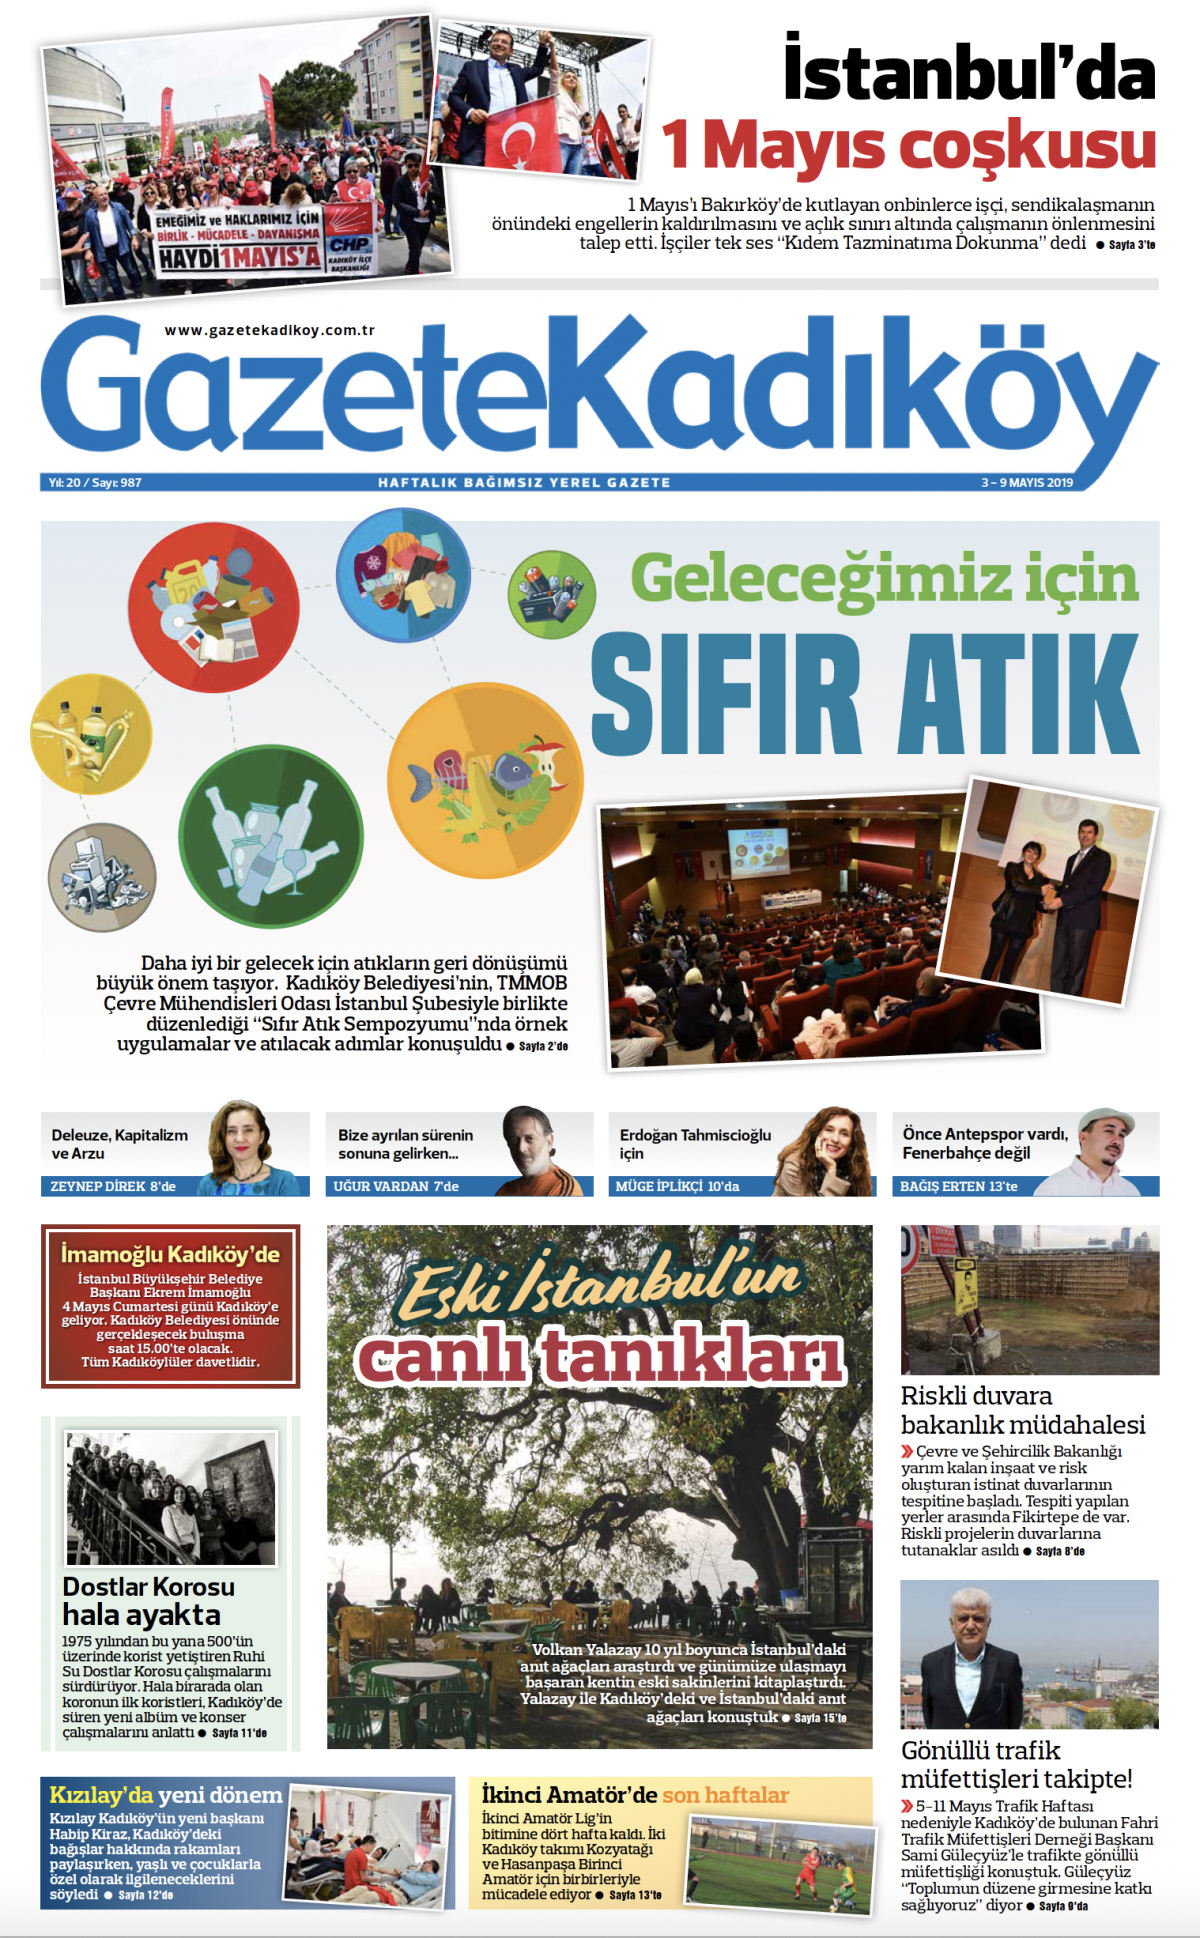 Gazete Kadıköy - 987. Sayı